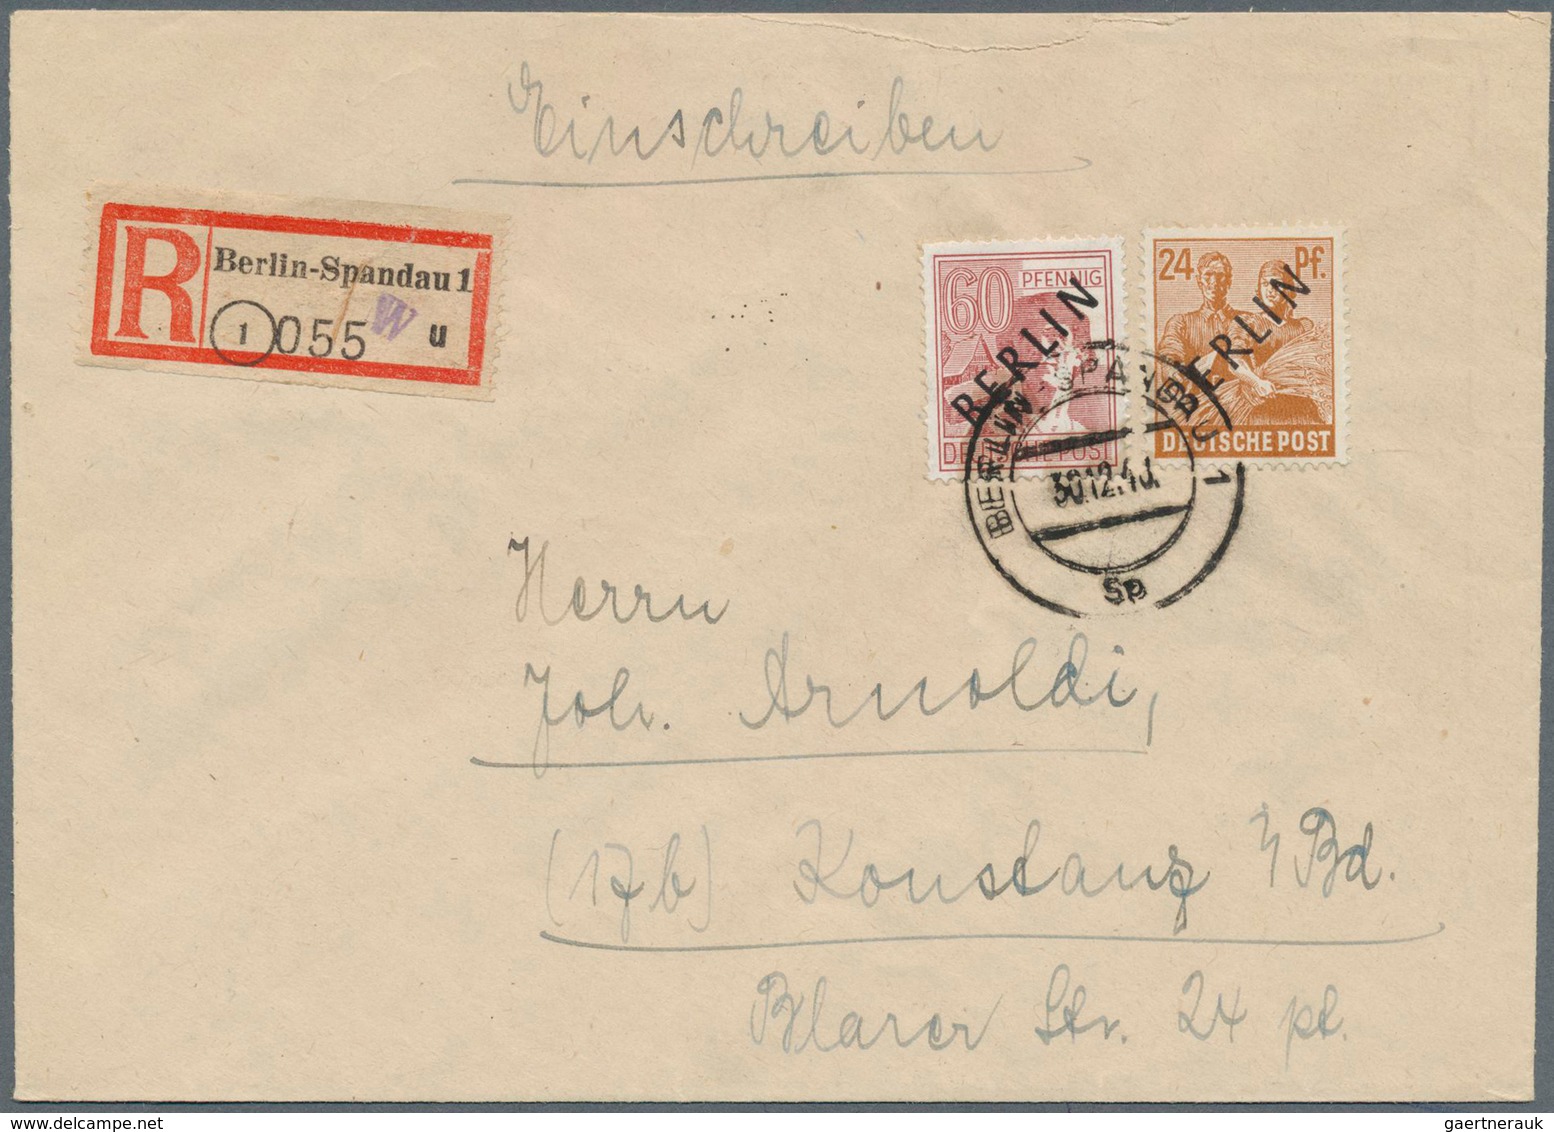 Berlin: 1948: 24 Und 40 Pf Scharzaufdruck Zusammen Auf Brief Ab Berlin-Spandau Vom 30.12.48 Nach Kon - Lettres & Documents